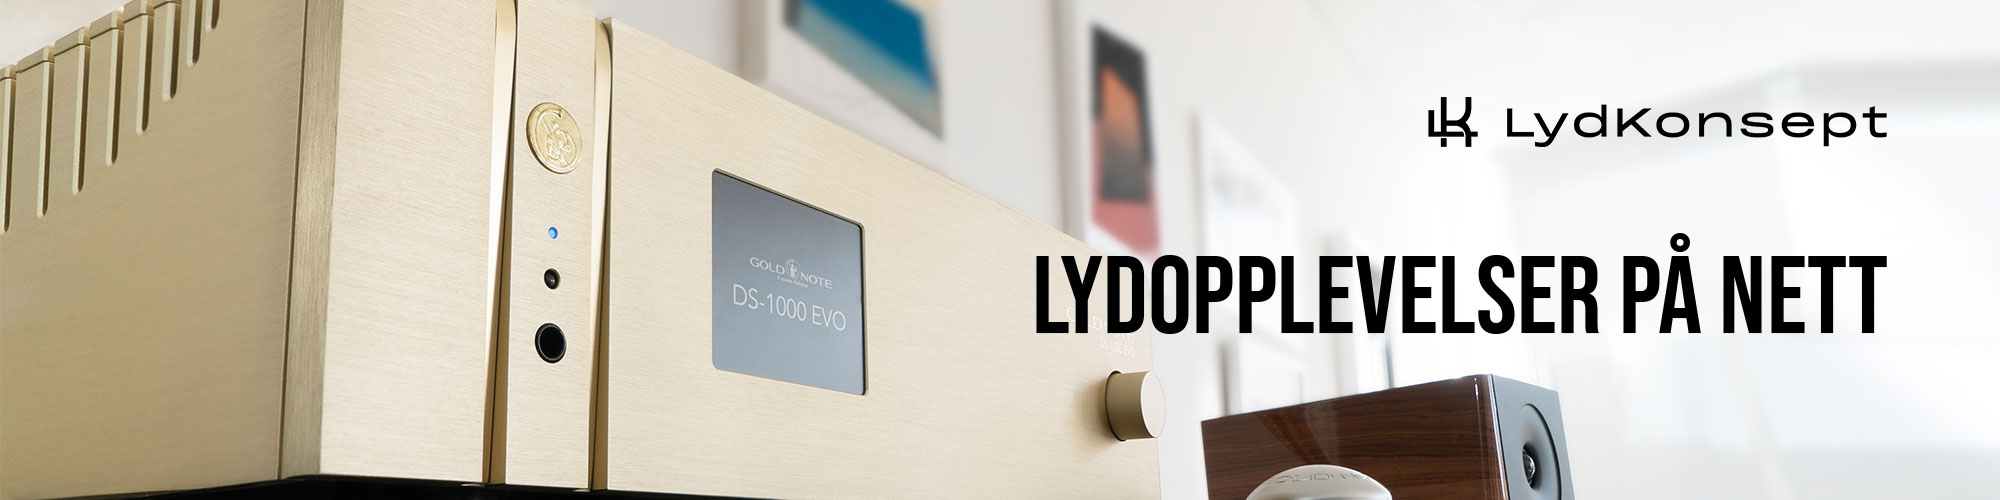 LydKonsept-Top-Banner-1.jpg